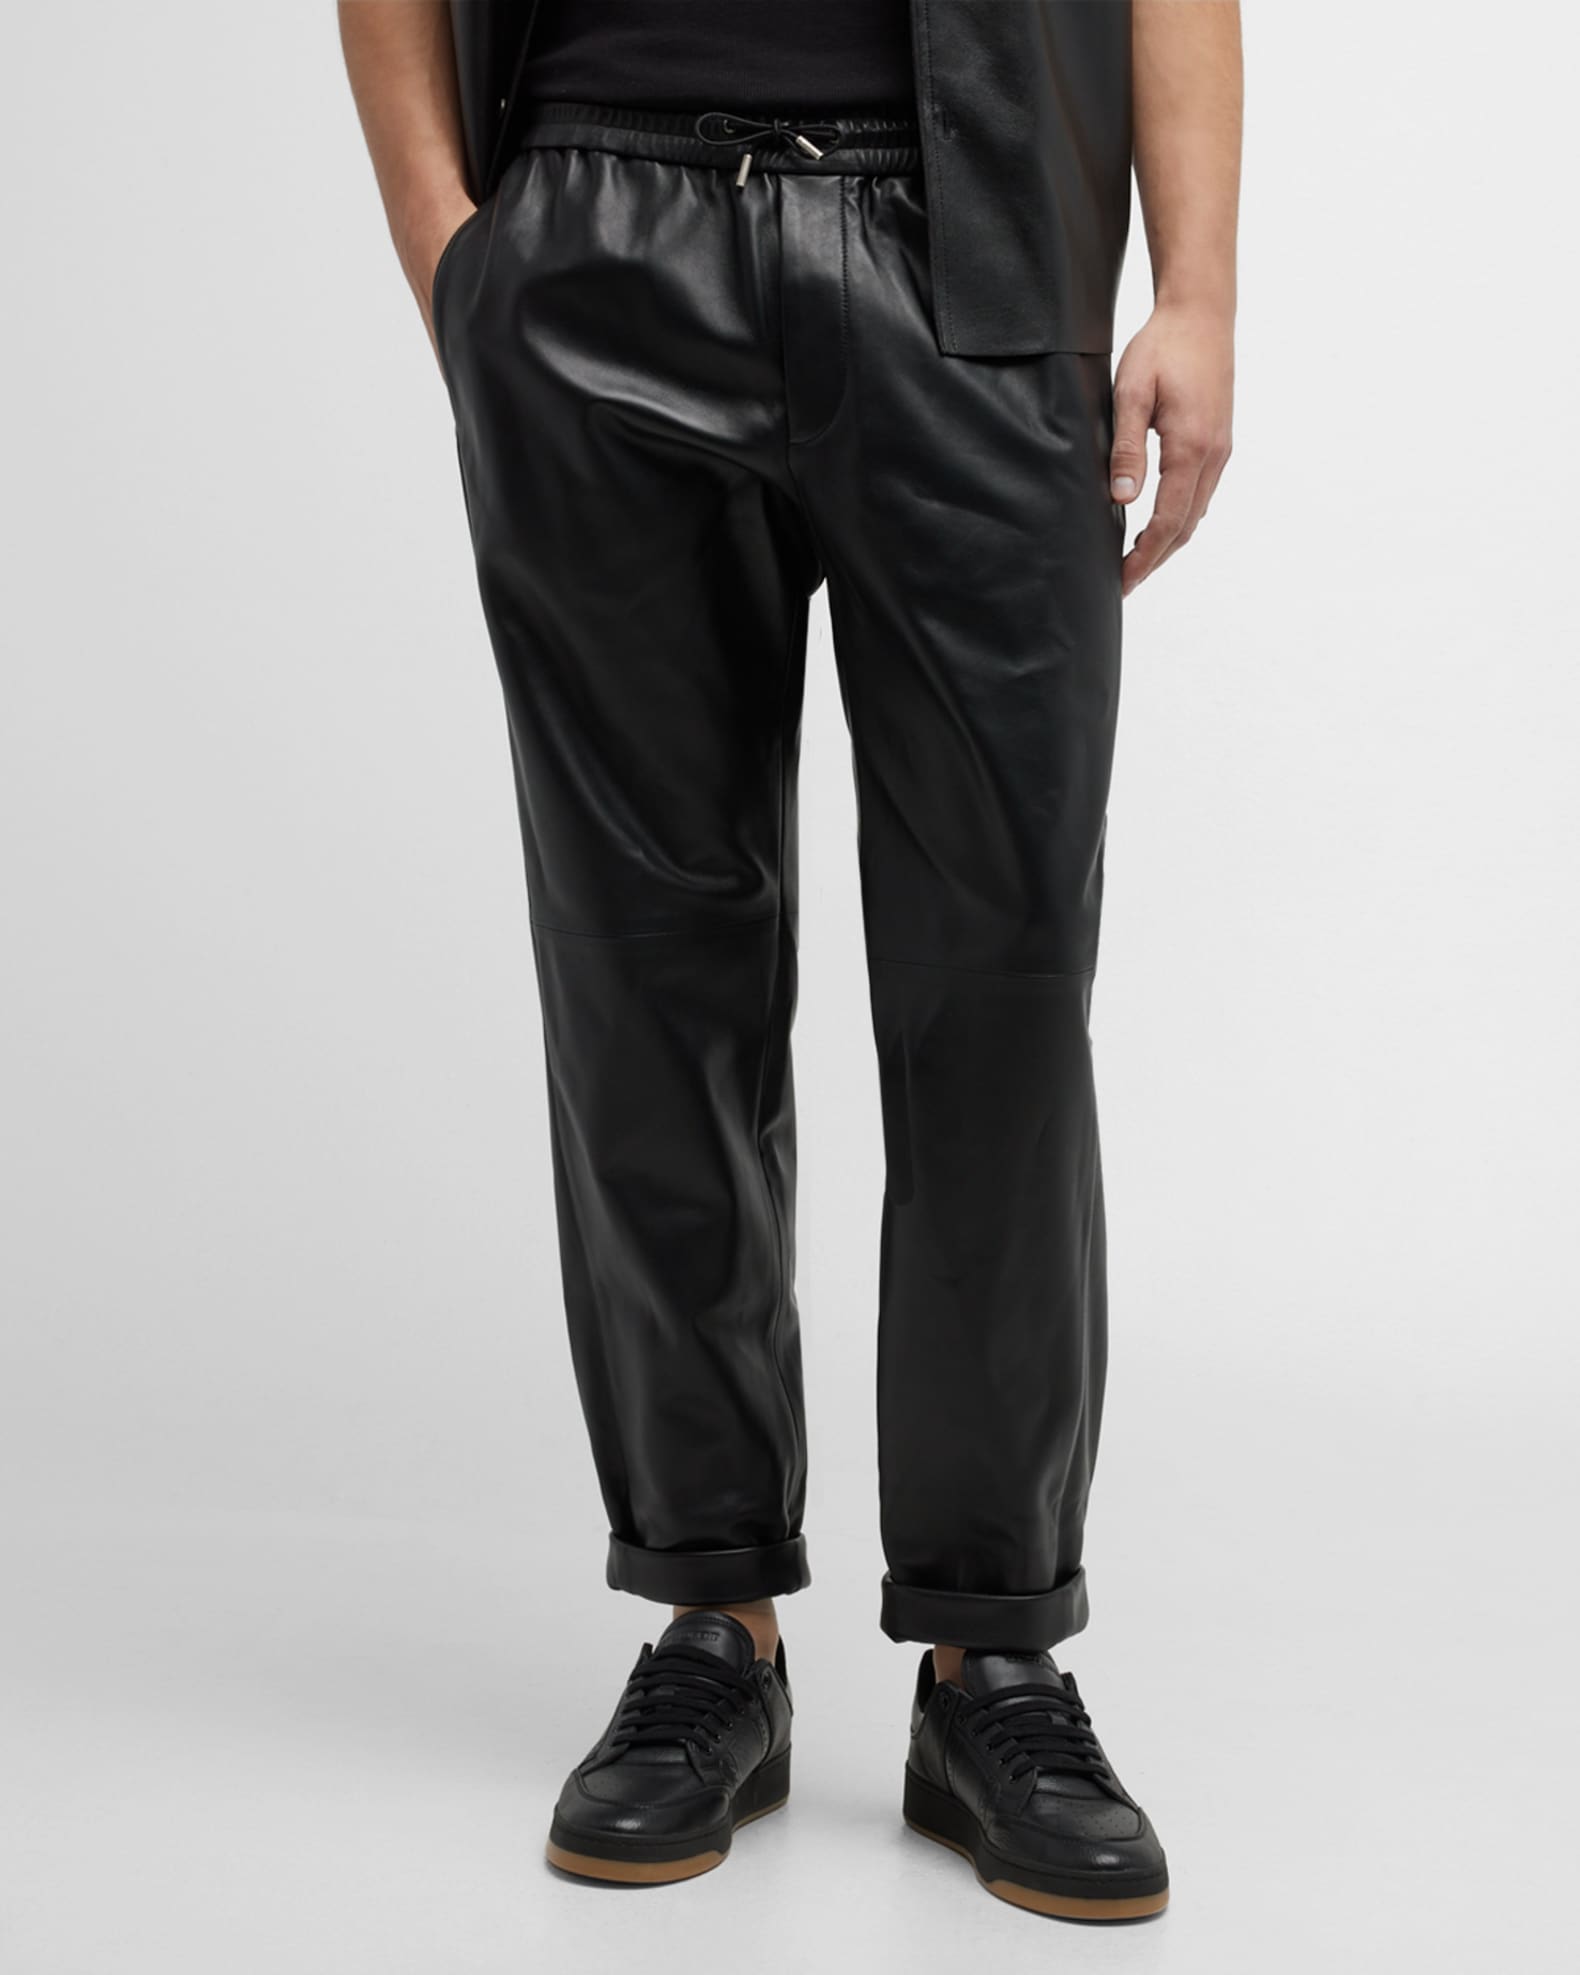 Saint Laurent Men's Leather Jogger Pants | Neiman Marcus